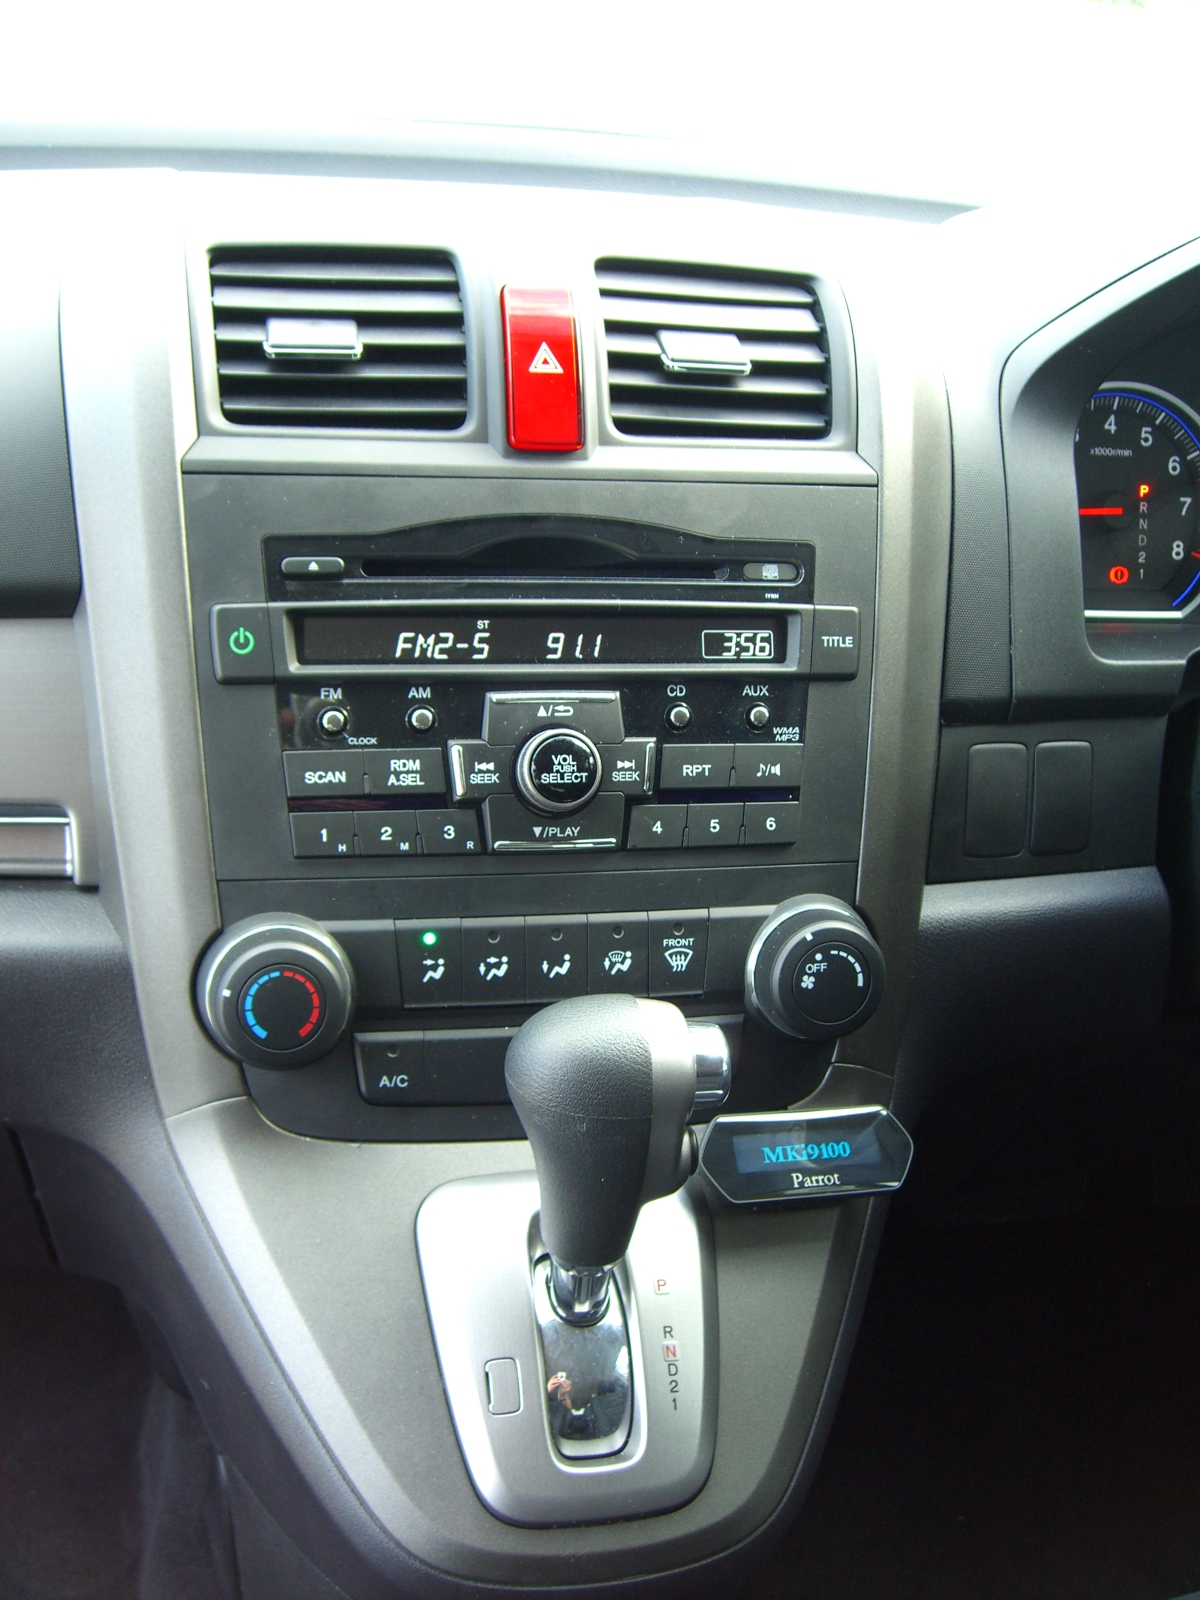 Honda Crv 2010 Parrot Bluetooth install